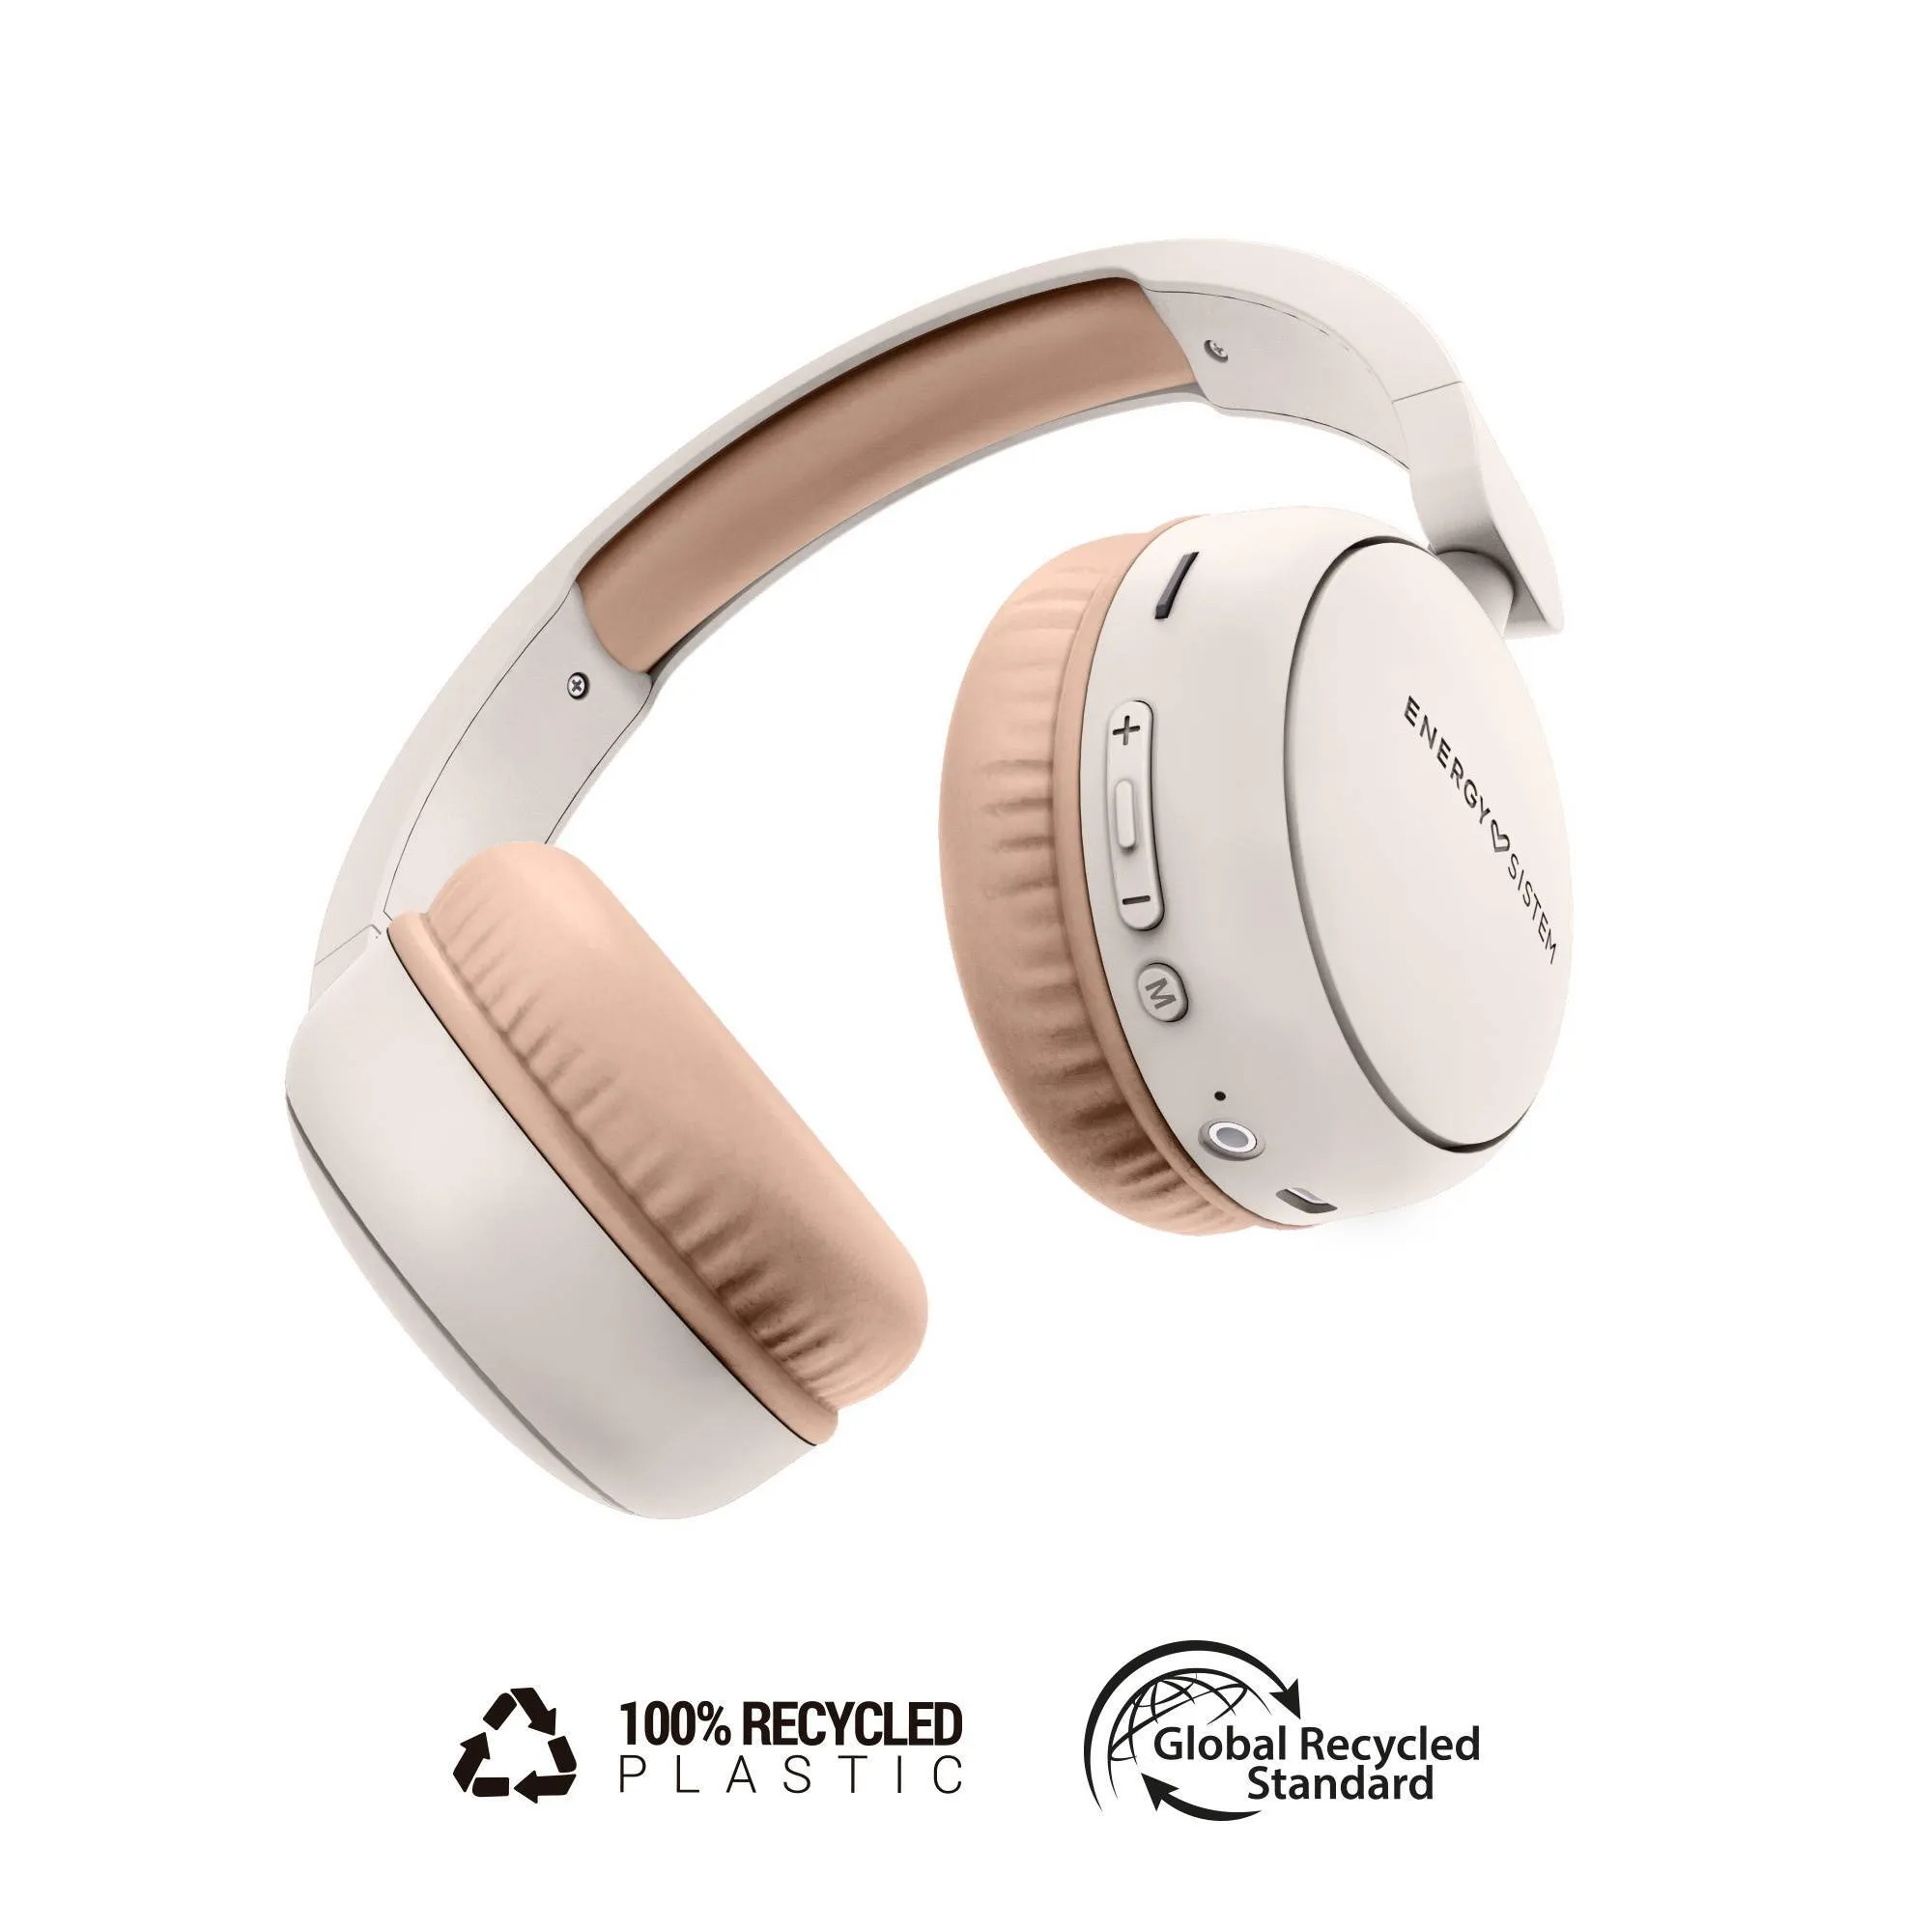 Auriculares Bluetooth Radio Color cream fabricados con plástico 100% reciclado y hasta 16h de autonomía